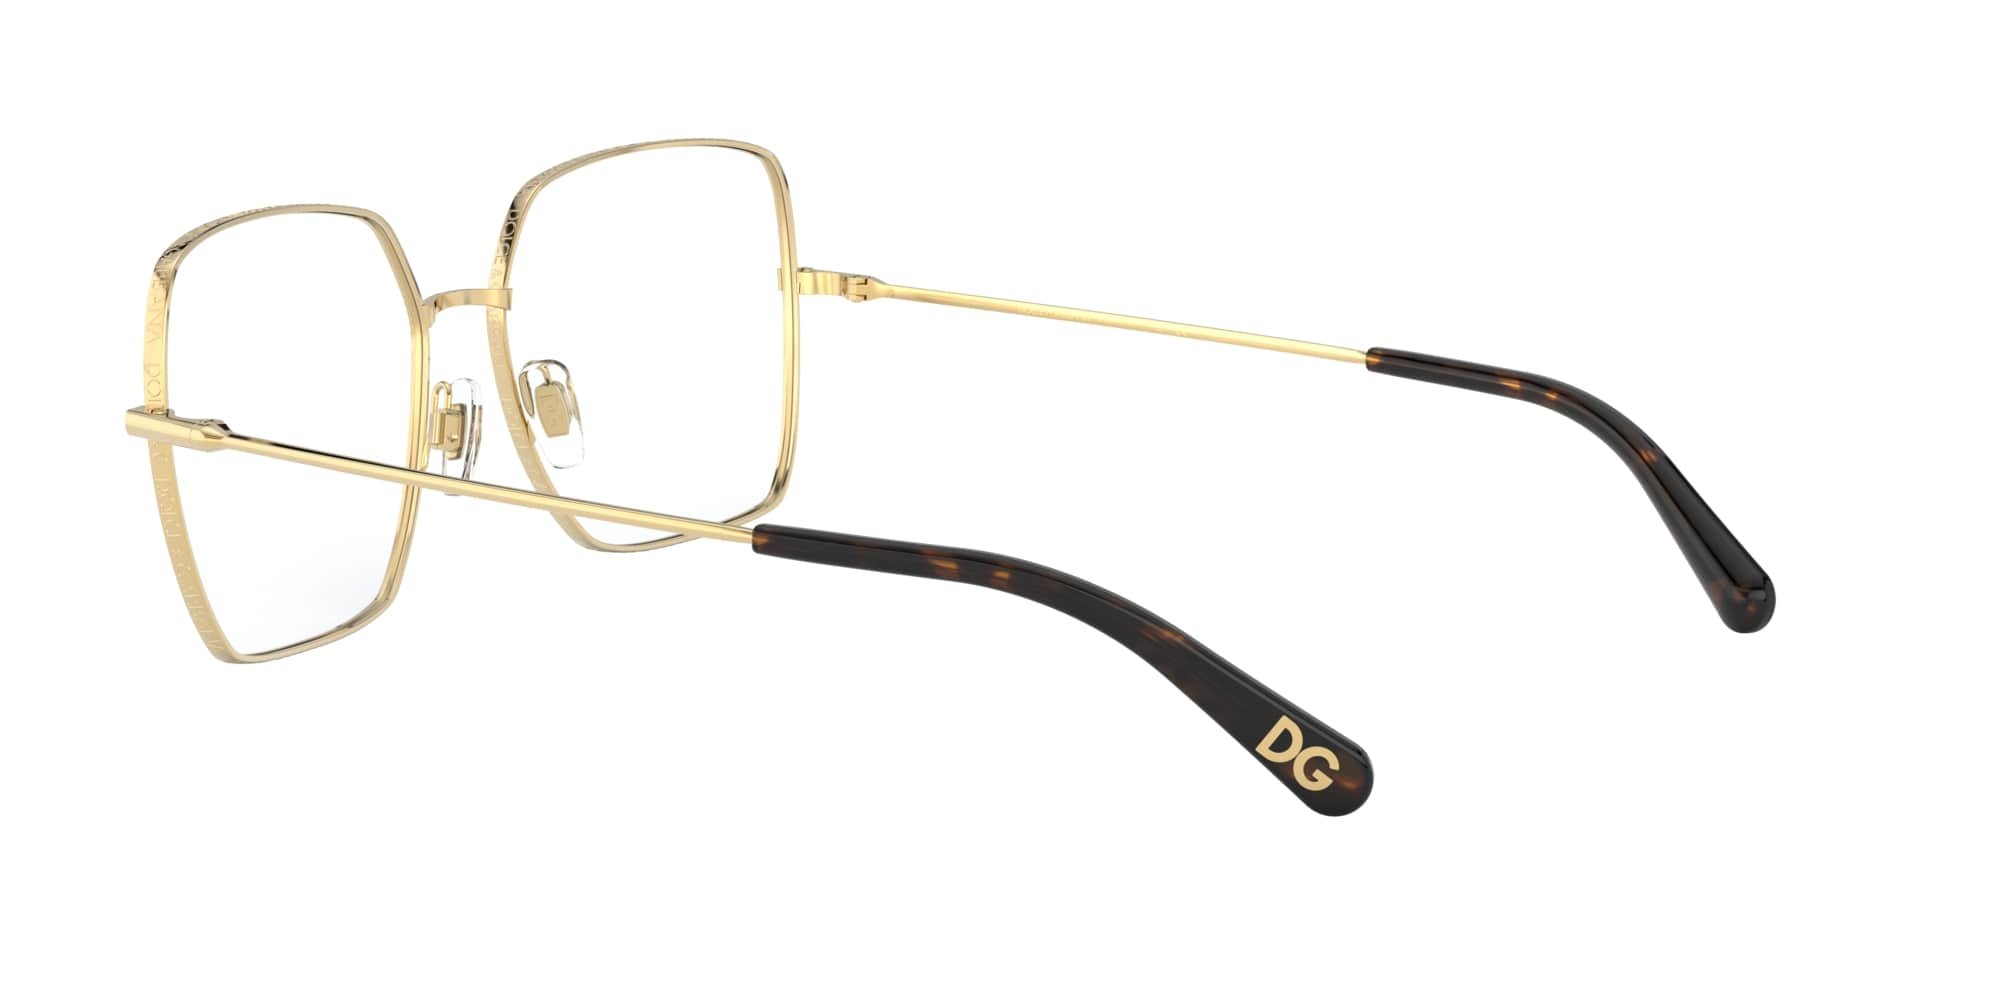 Das Bild zeigt die Korrektionsbrille DG1323 02 von der Marke D&G in gold.